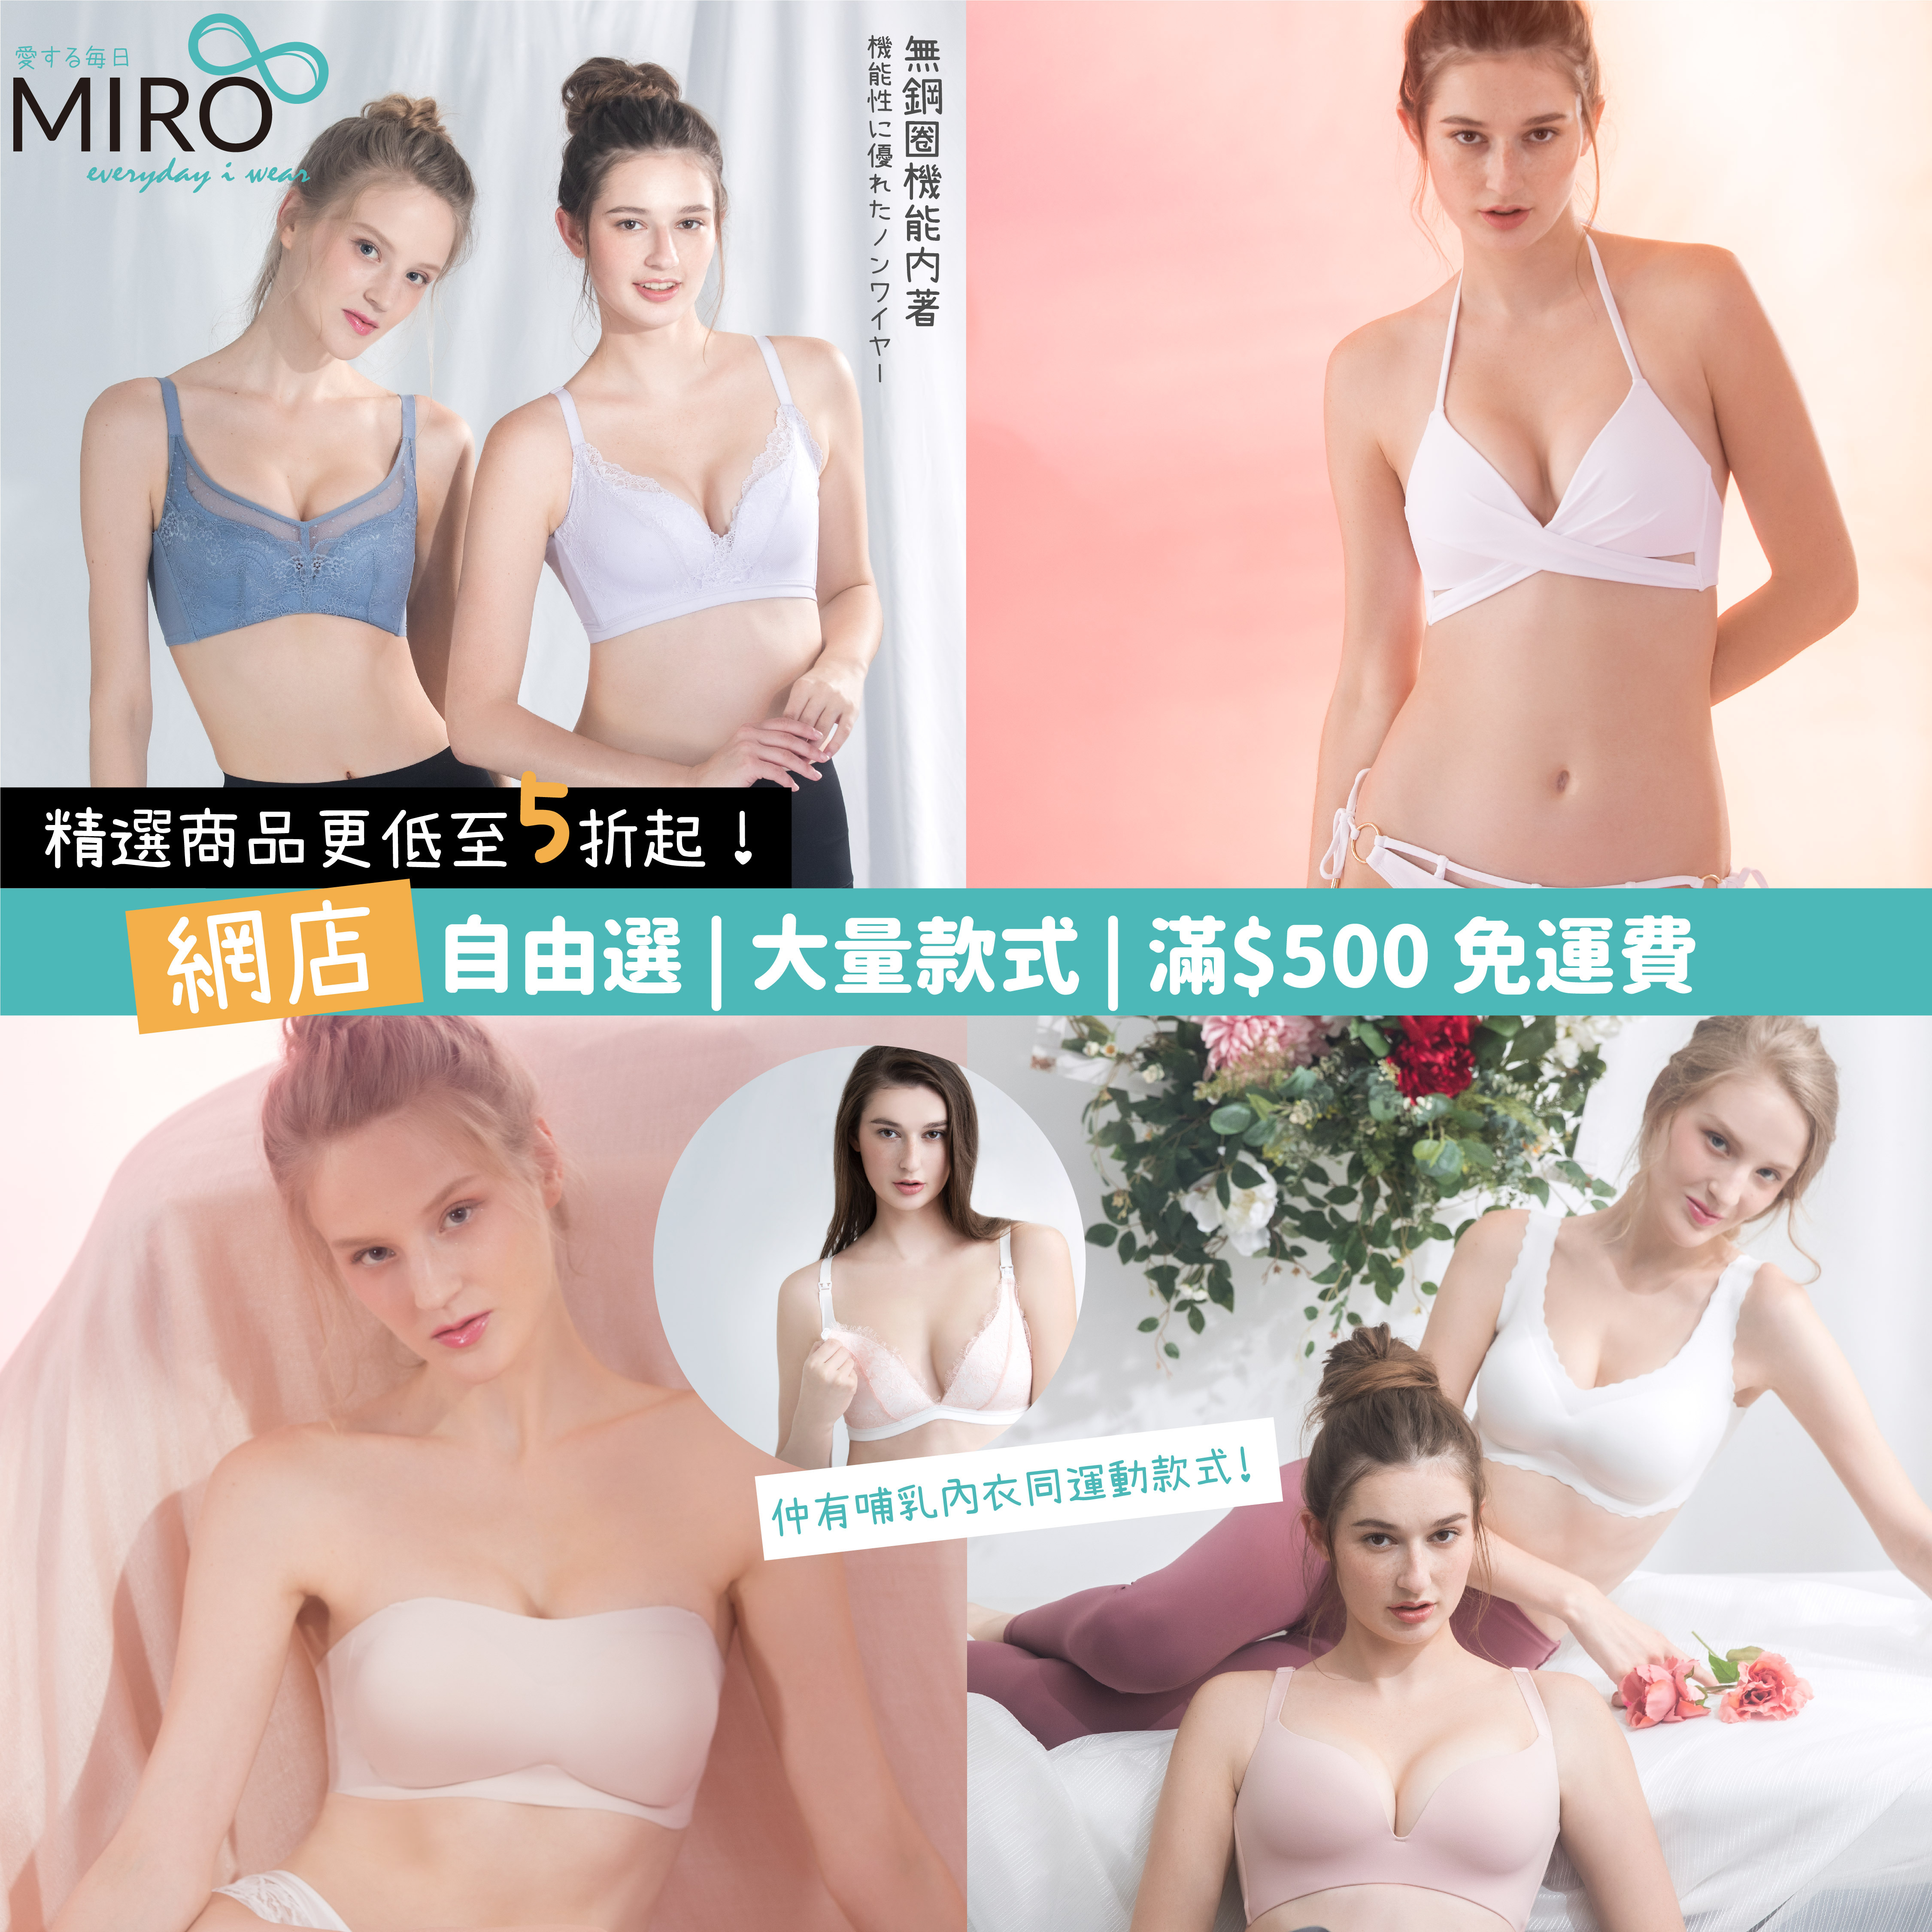 日本Miro Bra胸圍無鋼圈32/70A & 34/75A 2色入, 女裝, 上衣, 襯衫